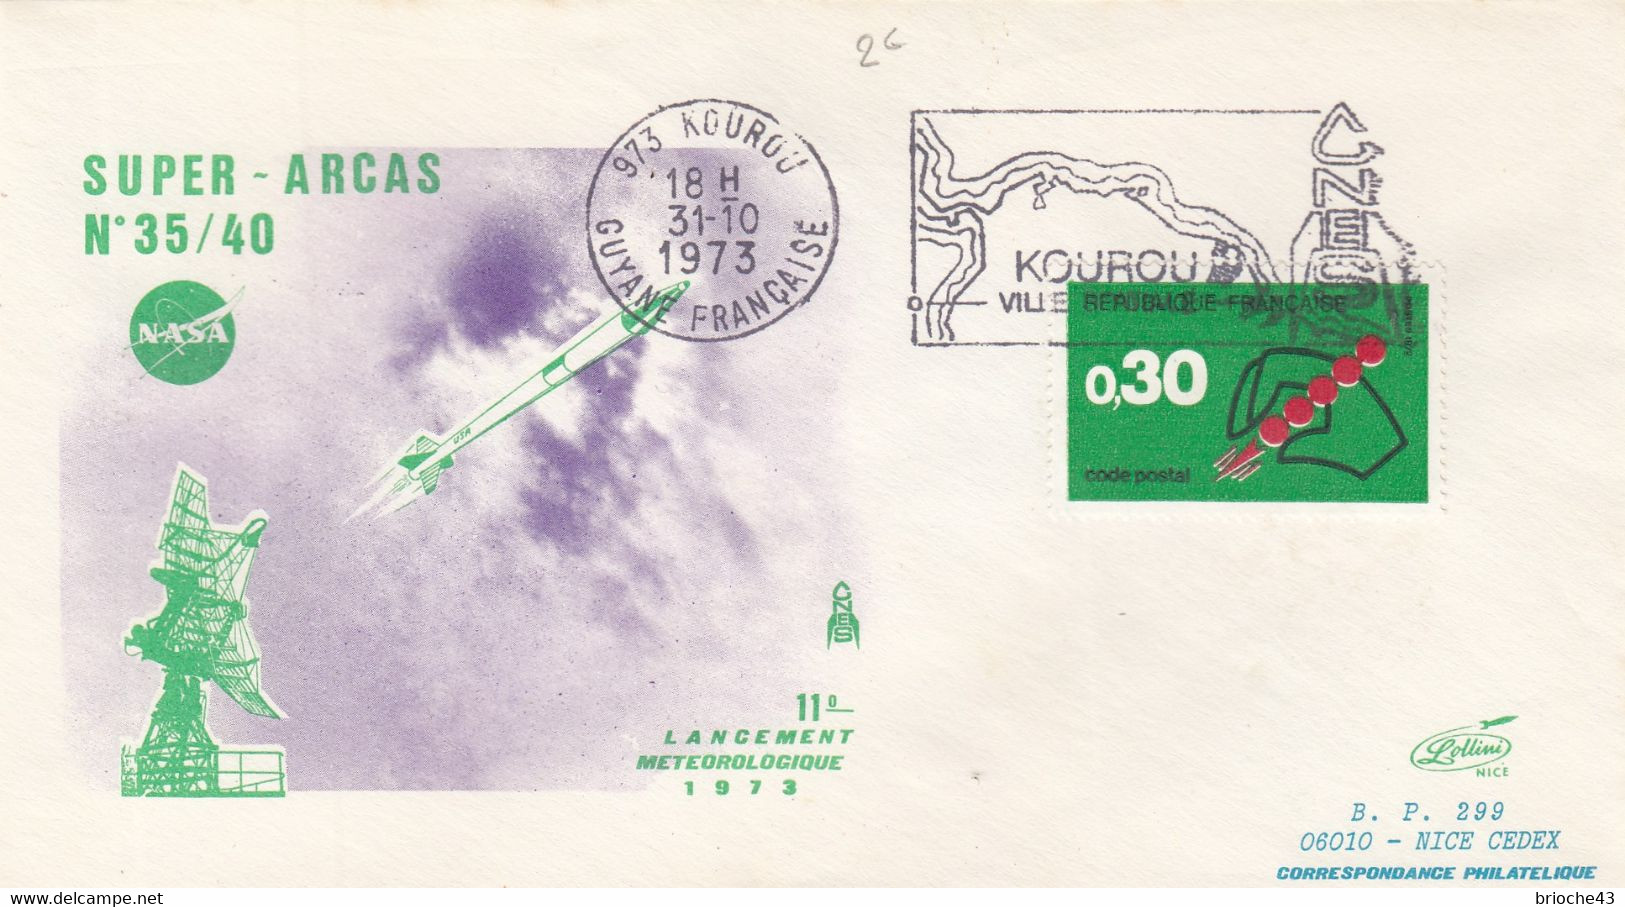 NASA - SUPER ARCAS 35/10 - 11e LANCEMENT METEO 1973 - KOUROU 31.10.1973 /1 - Autres & Non Classés